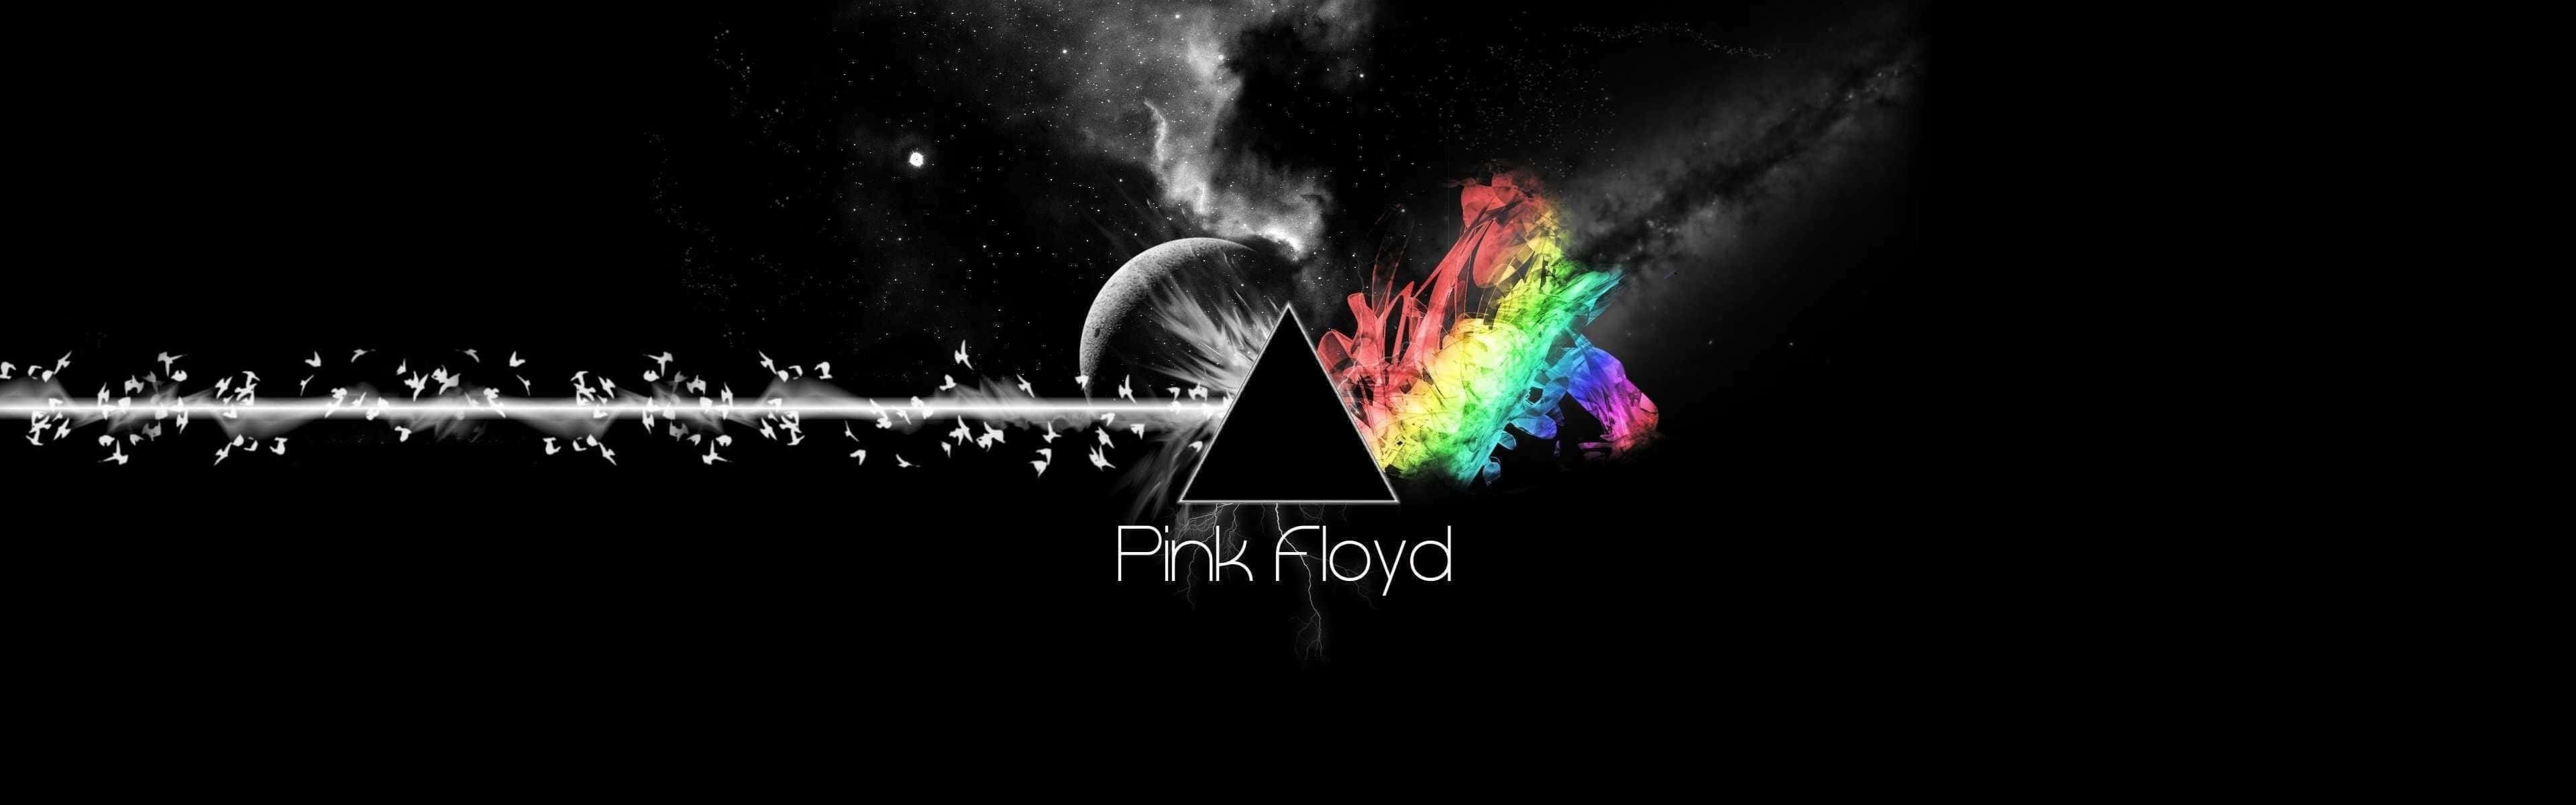 Wallpaperdi Pink Floyd, Wallpaper Di Pink Floyd, Wallpaper Di Pink Floyd Sfondo